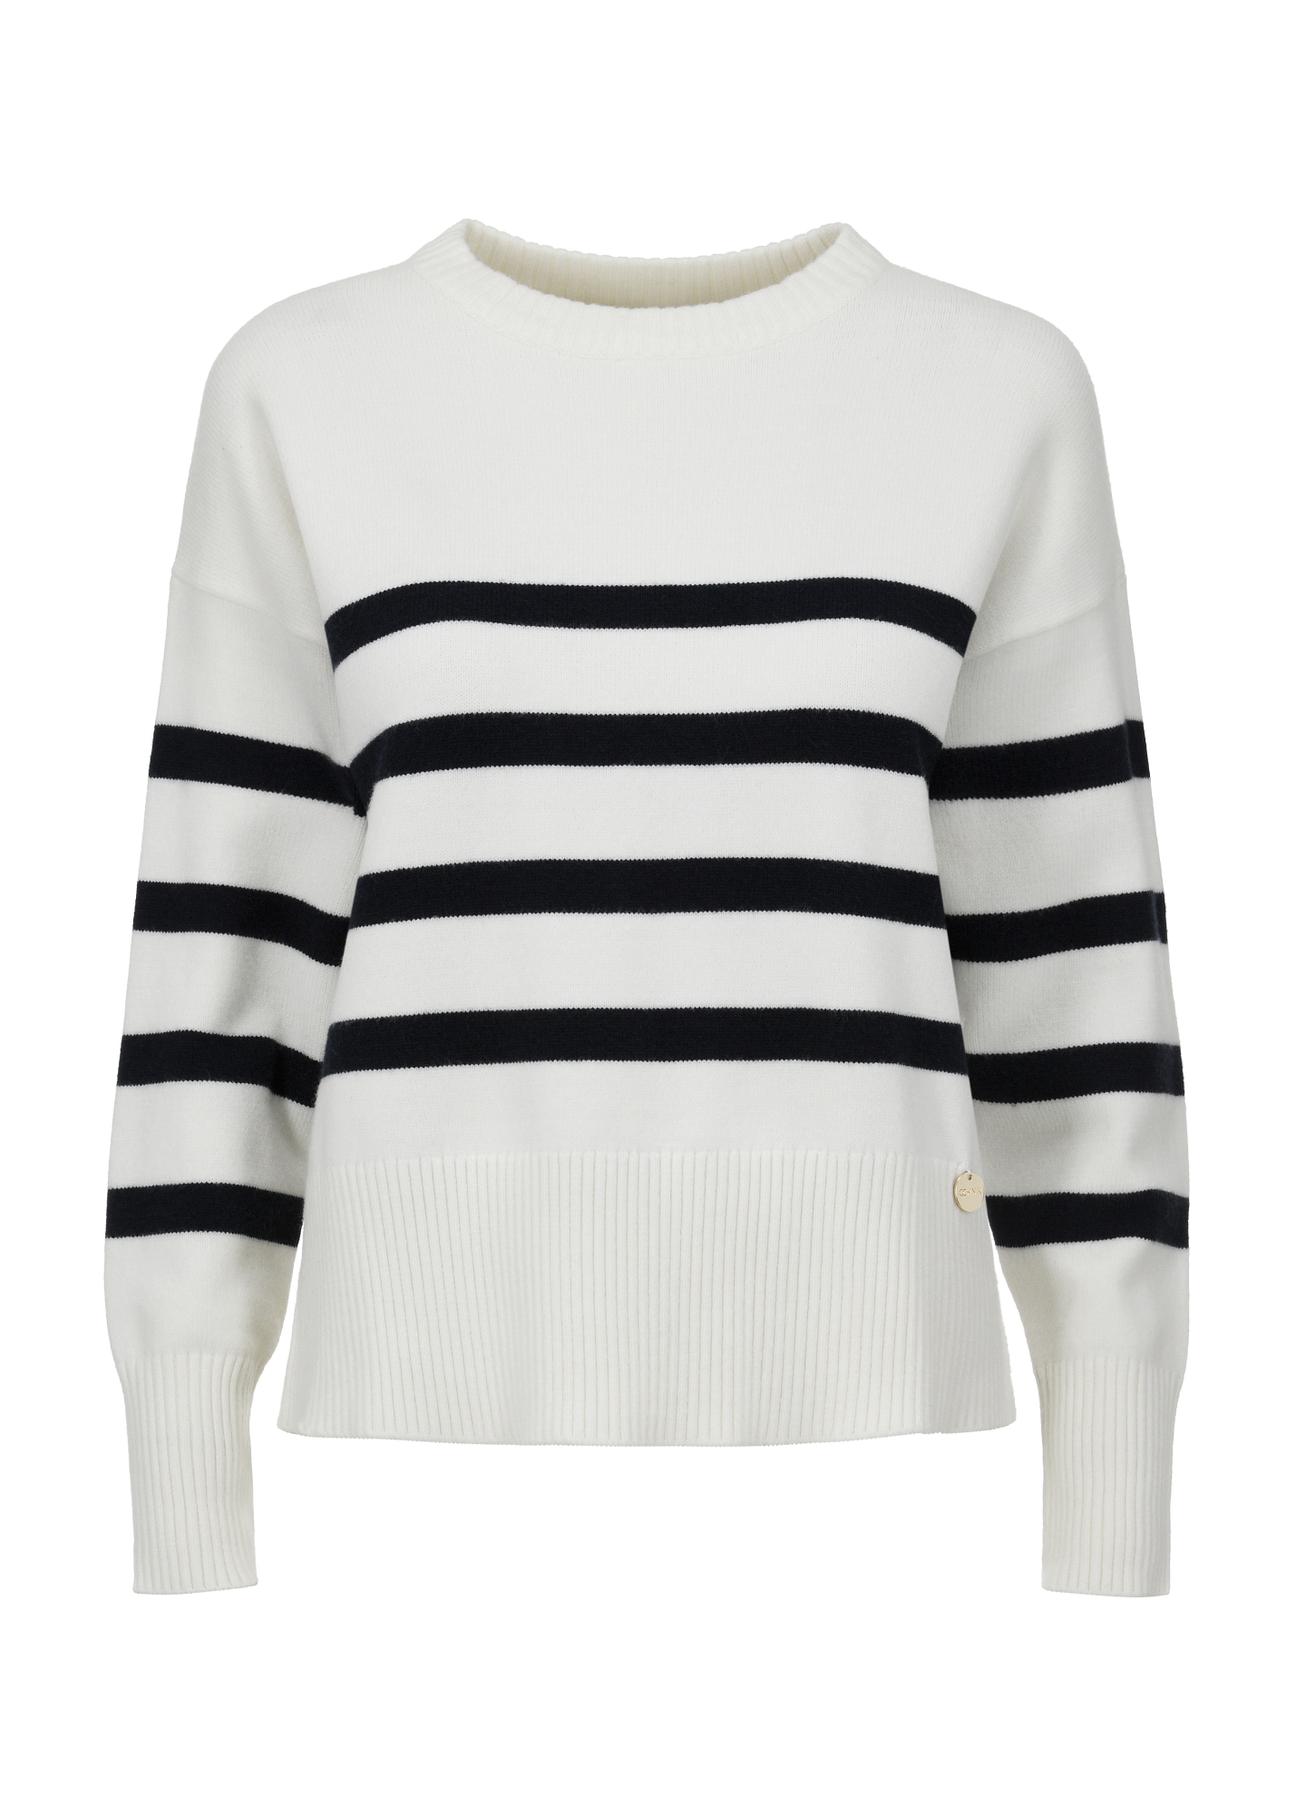 Biały sweter w paski damski SWEDT-0202-11(W24)-04